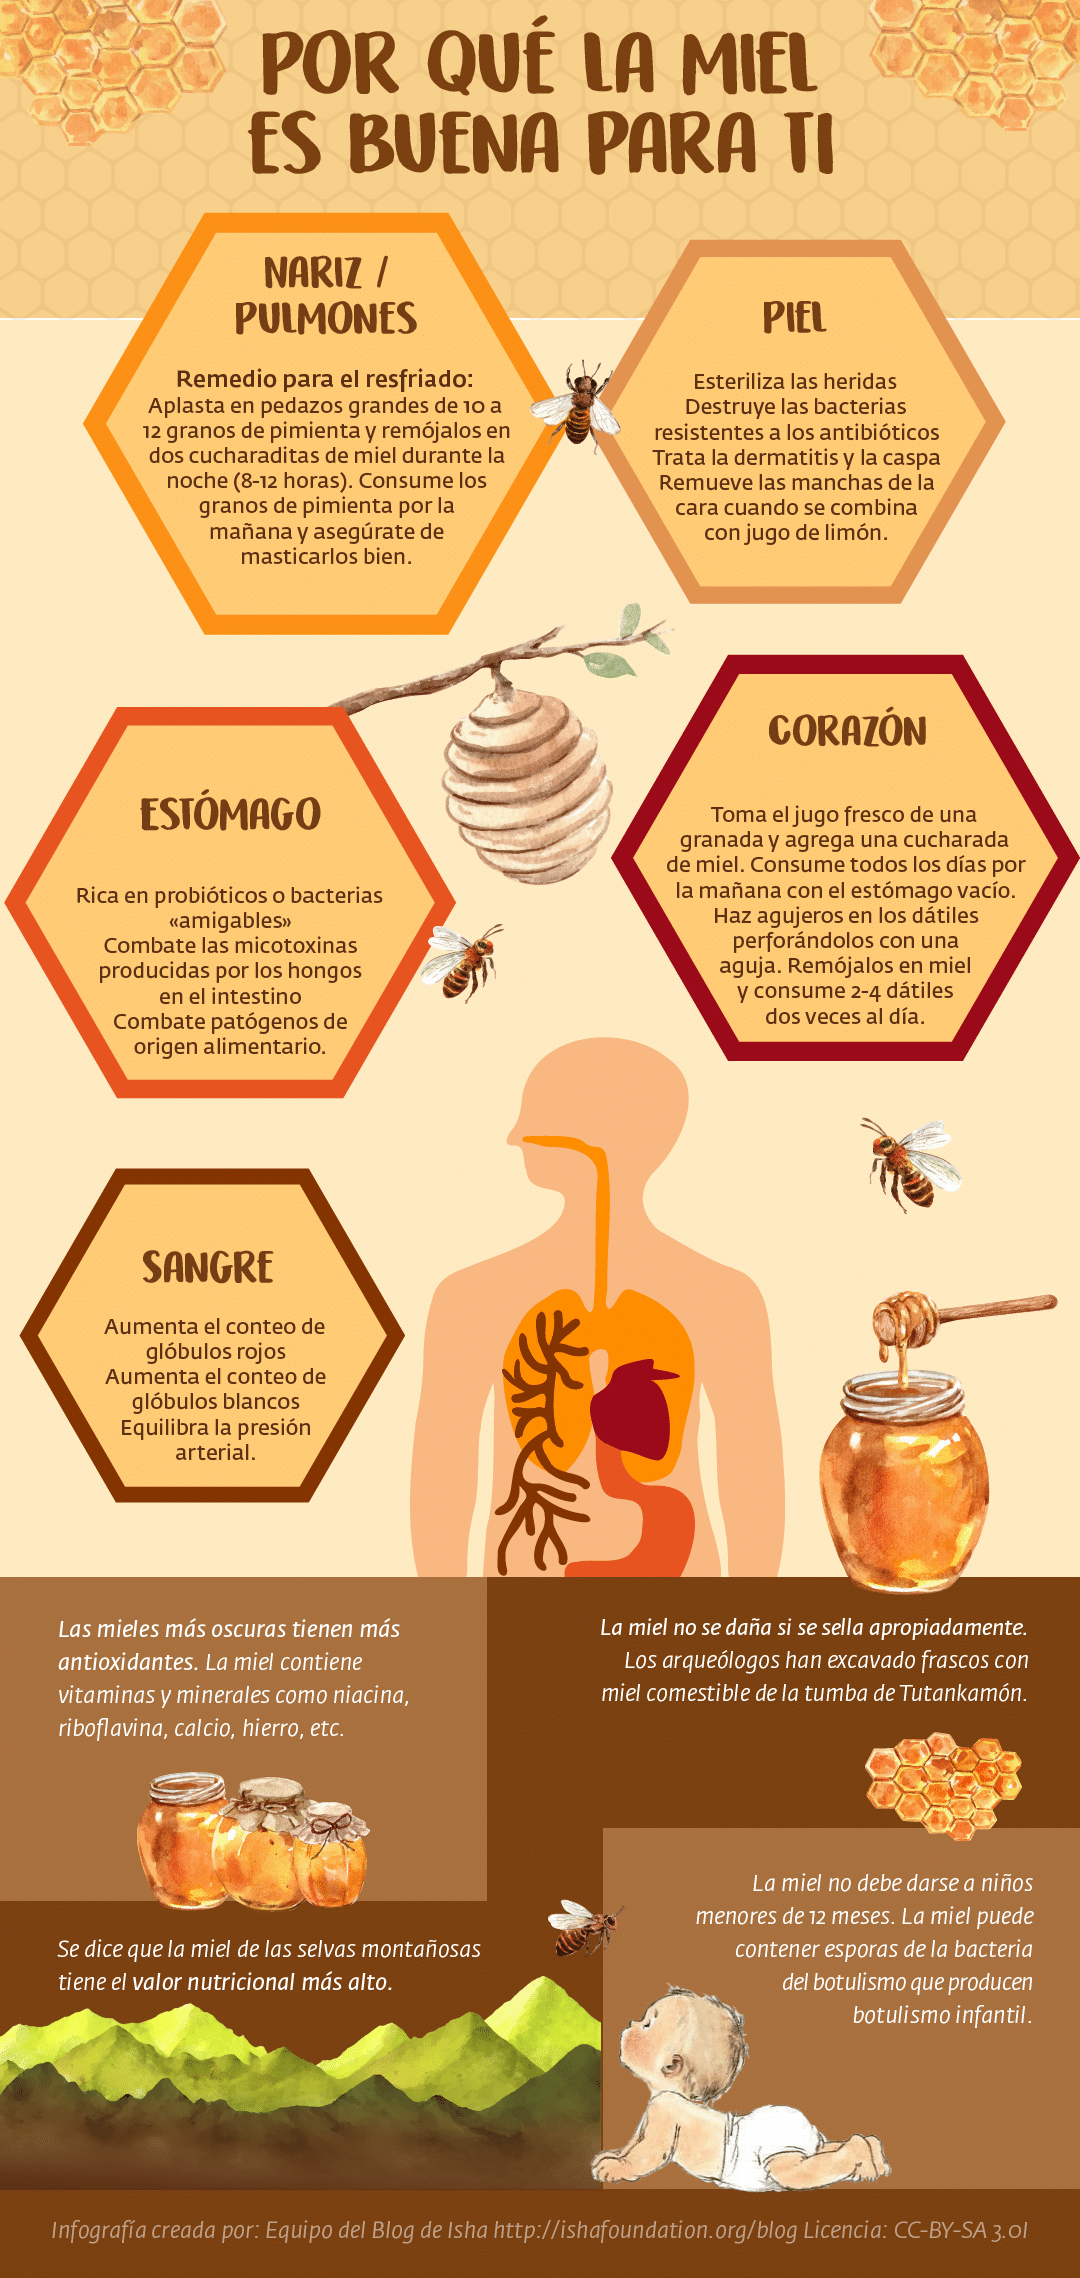 8 la miel y sus usos tradicionales